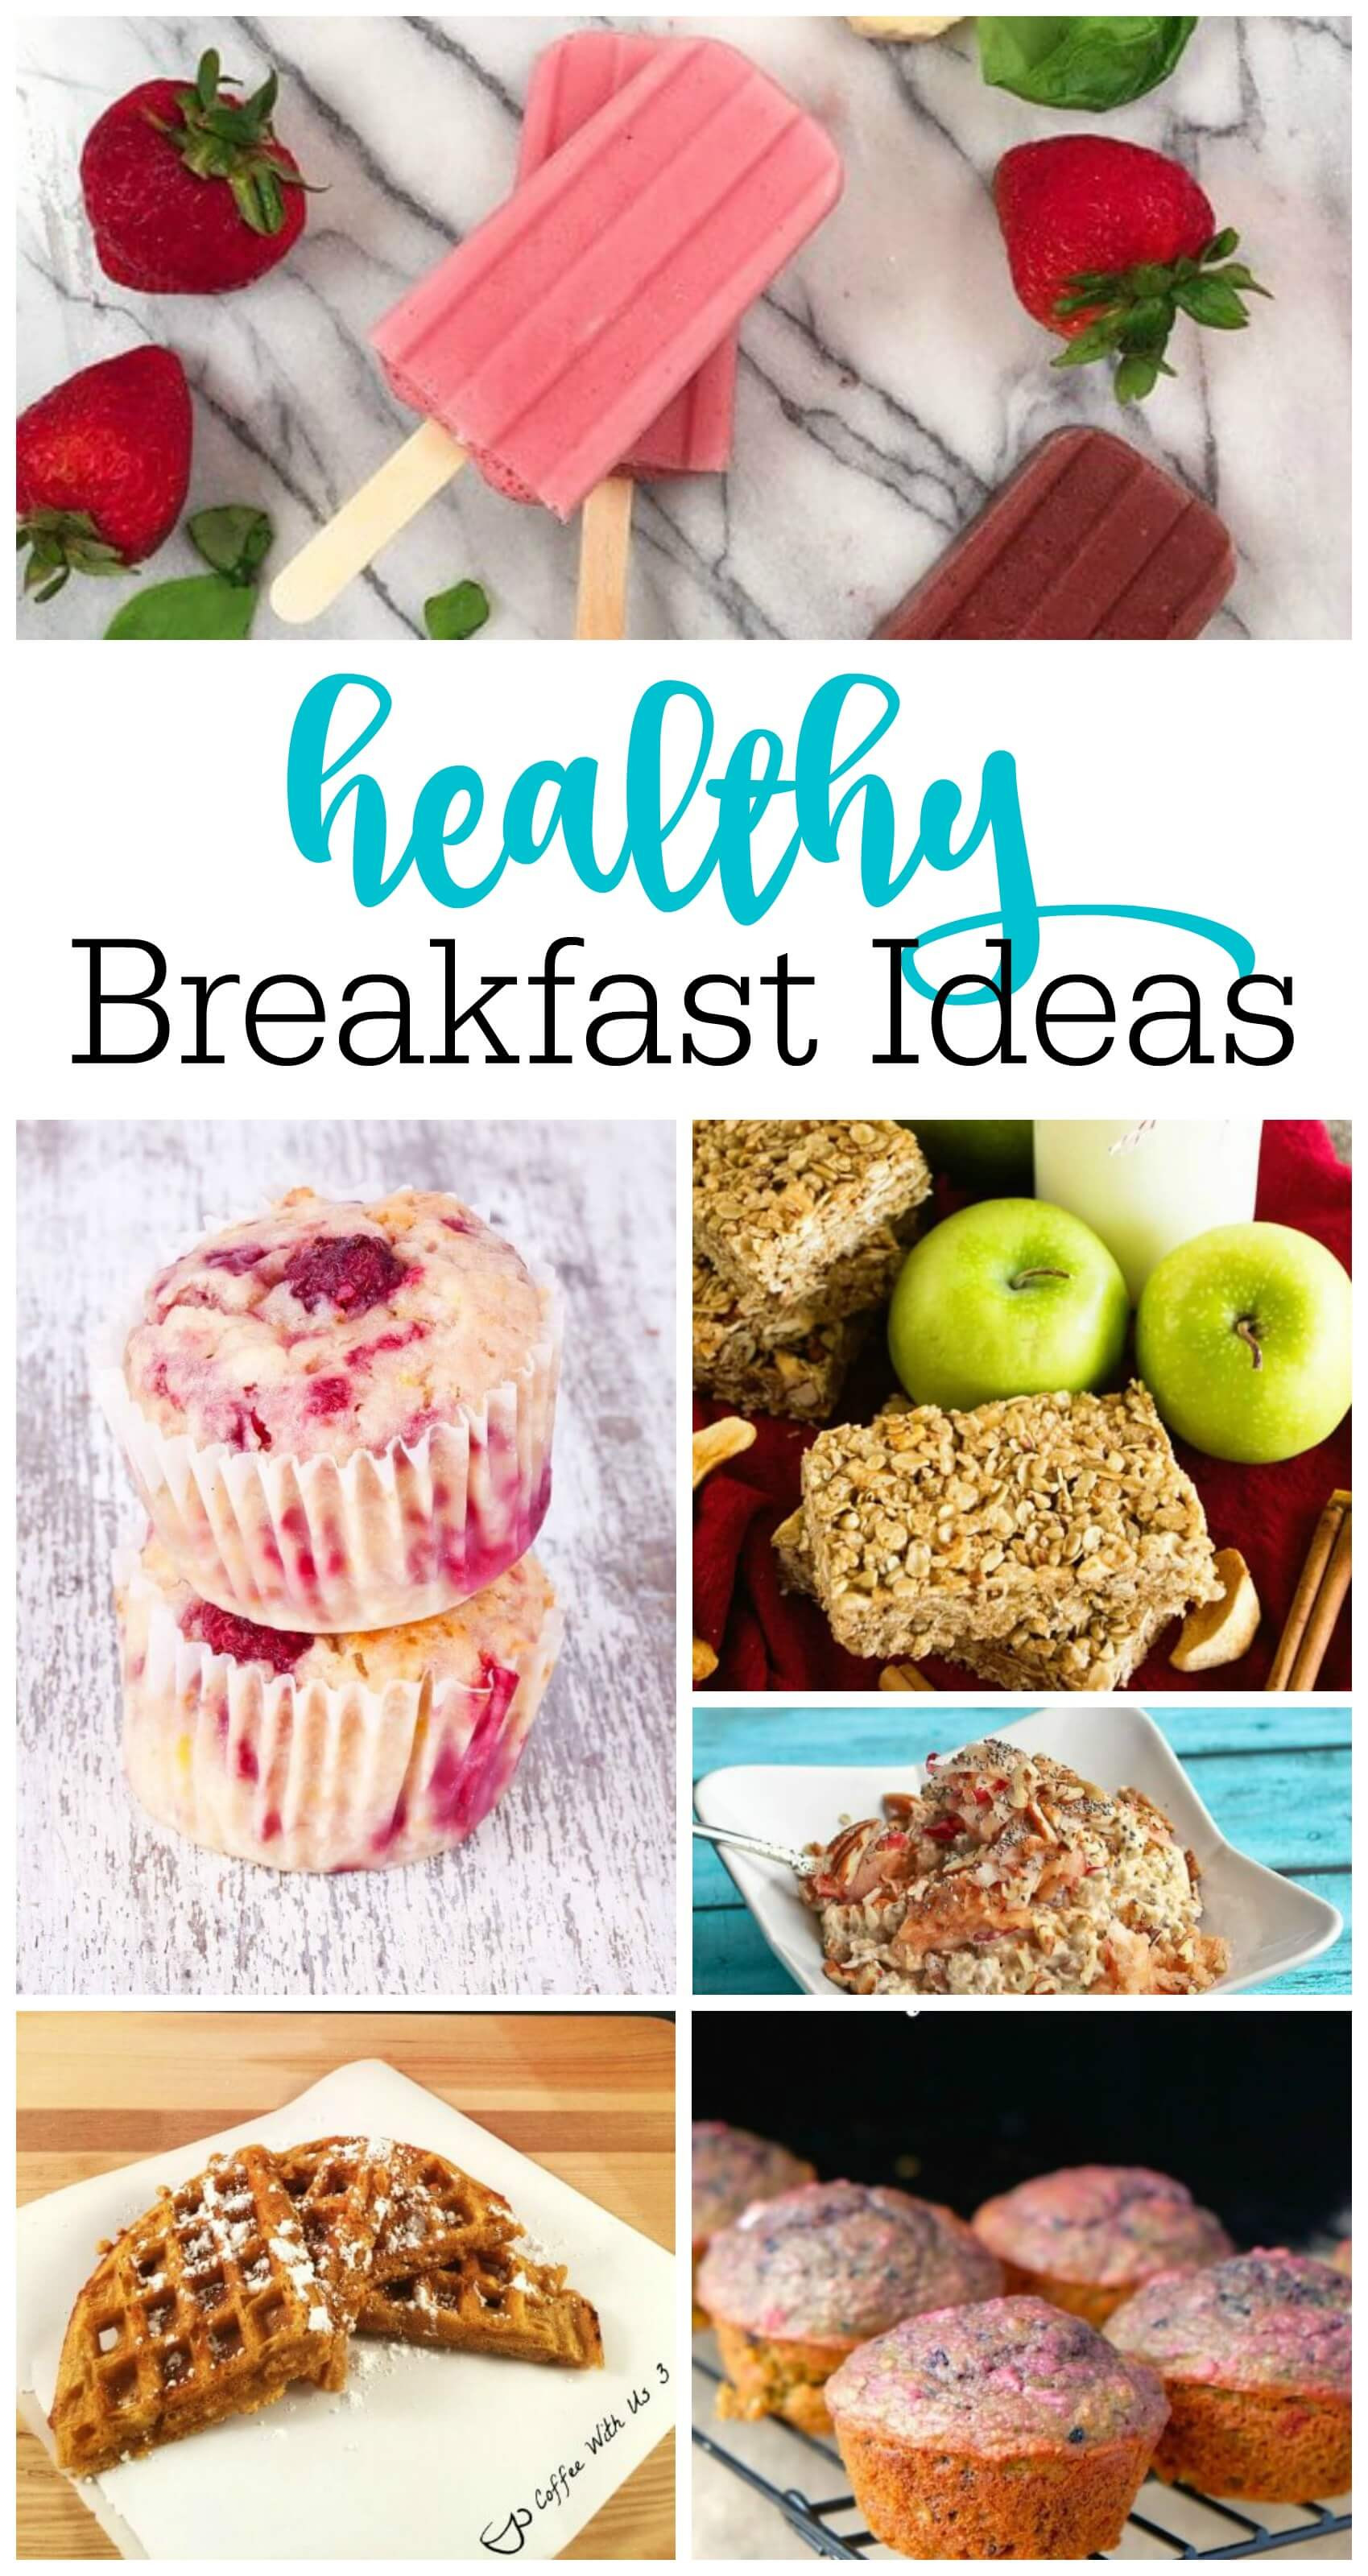 Healthy Breakfast Meal Ideas
 Healthy Breakfast Ideas for Busy Mornings